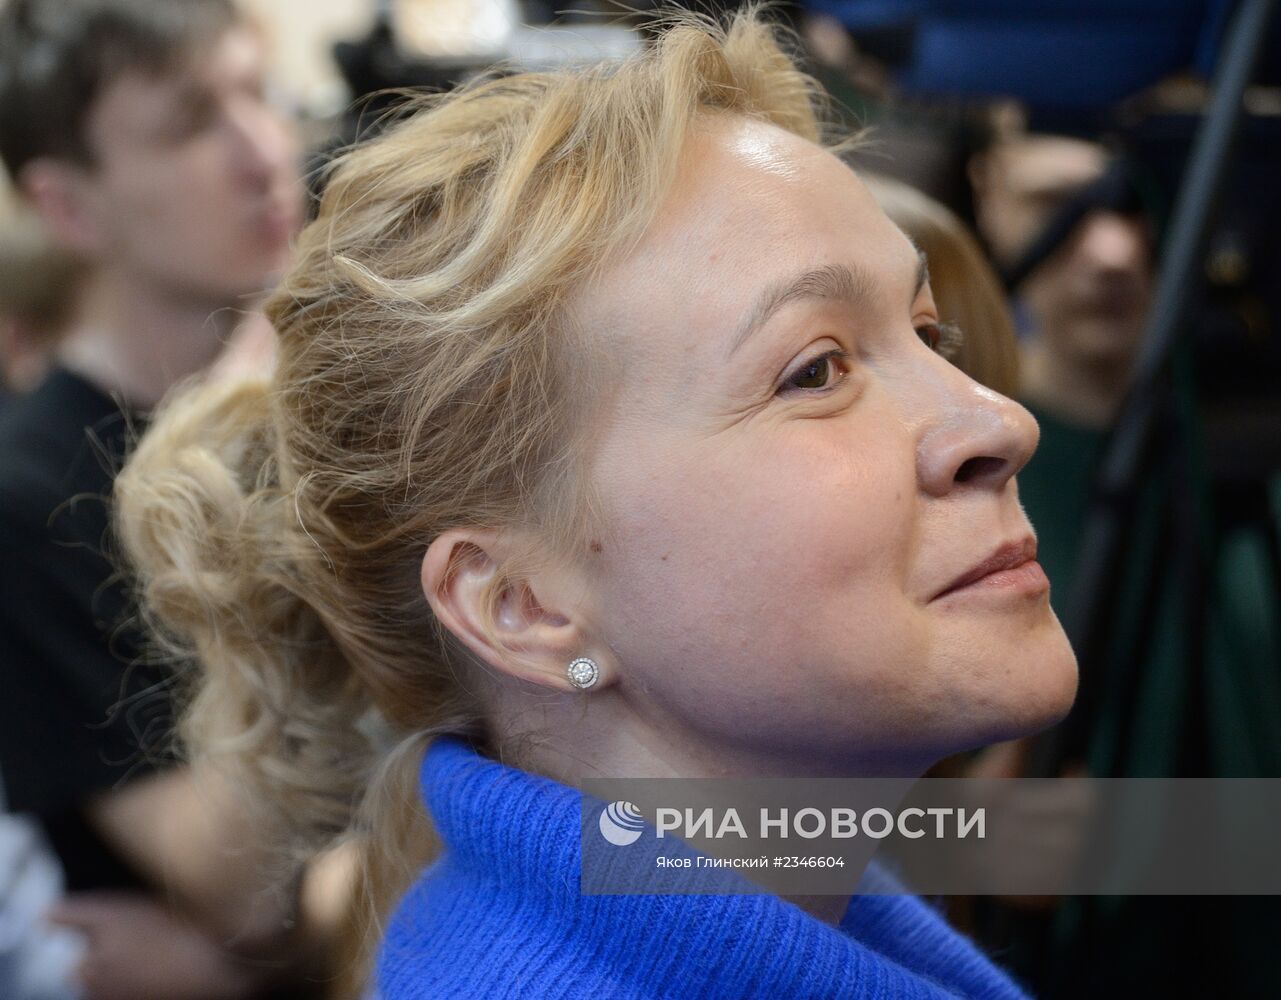 Оглашение приговора по делу бывшего шеф-редактора "Ура.ру"А.Пановой